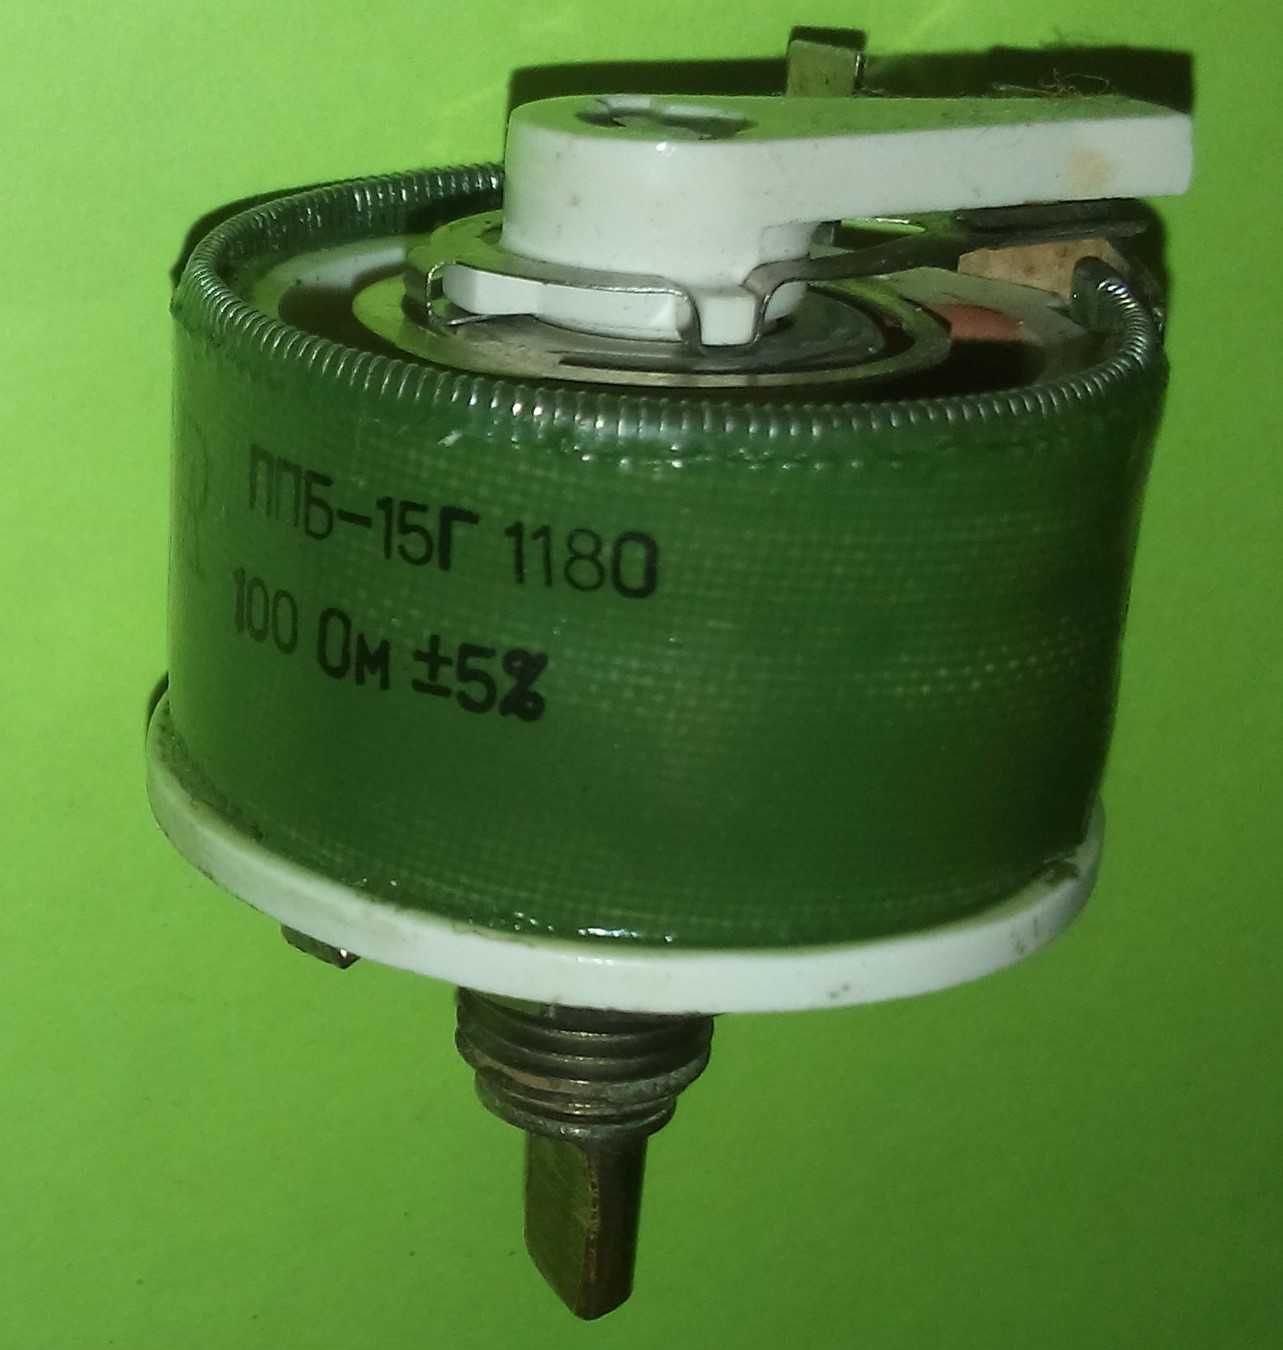 Переменный резистор ППБ-15Г  100 Ом.